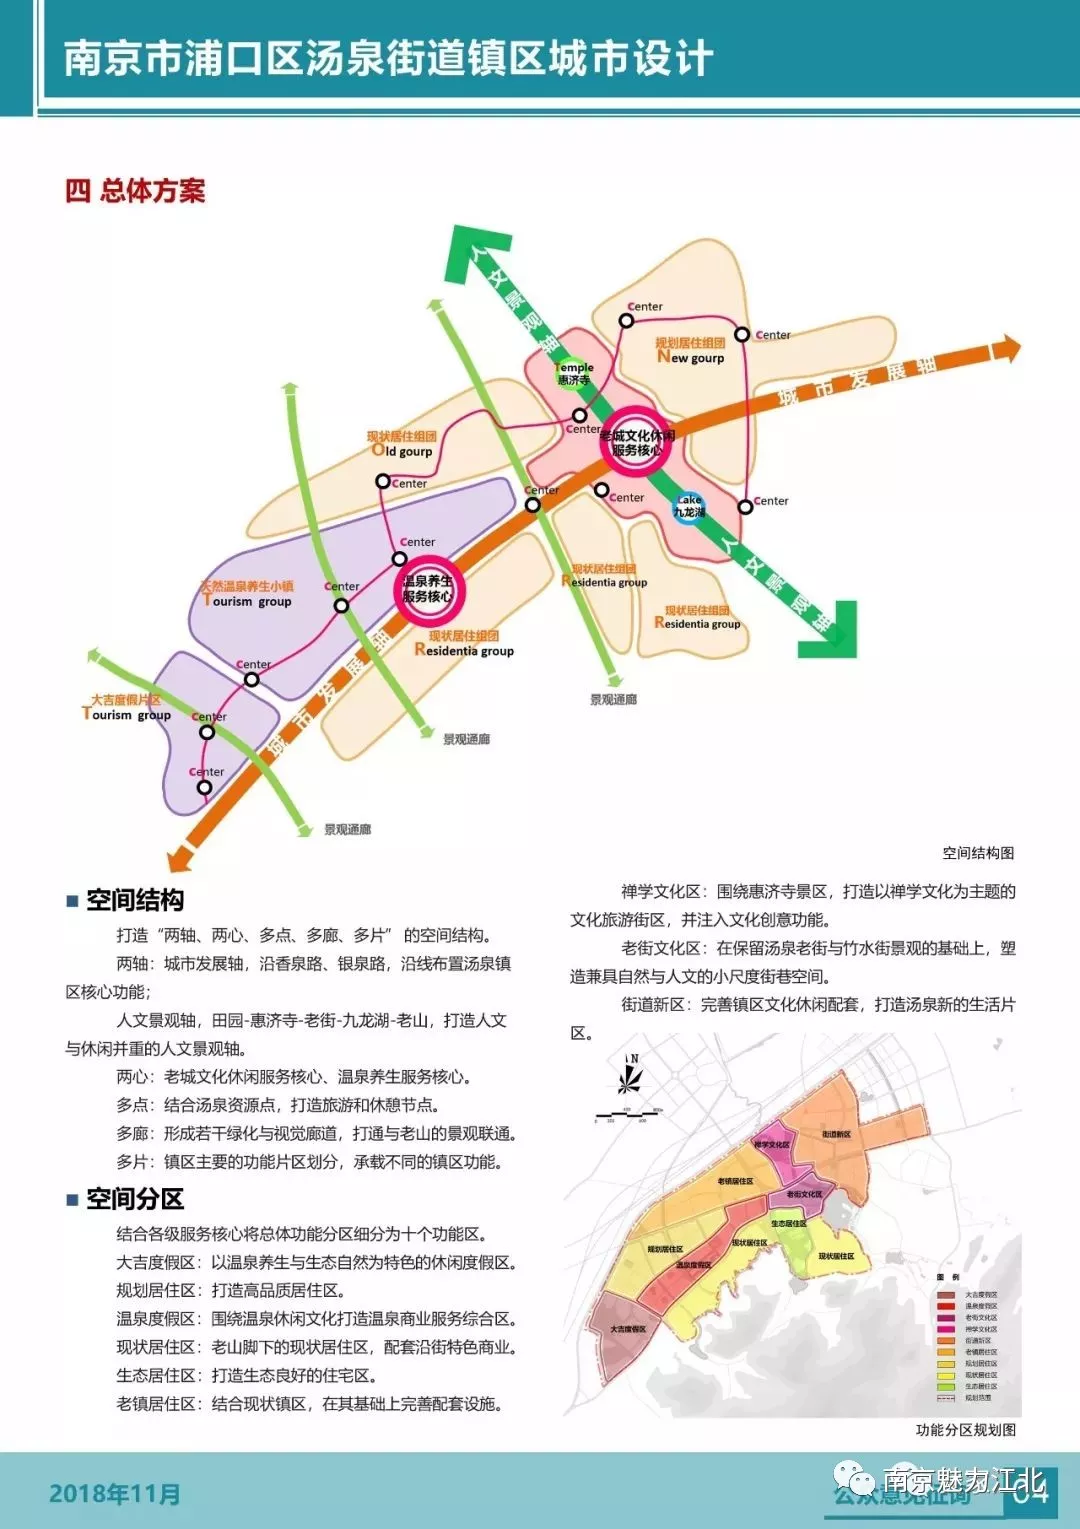 汤泉街道总体规划(2017-2035)刚刚出炉 责任编辑